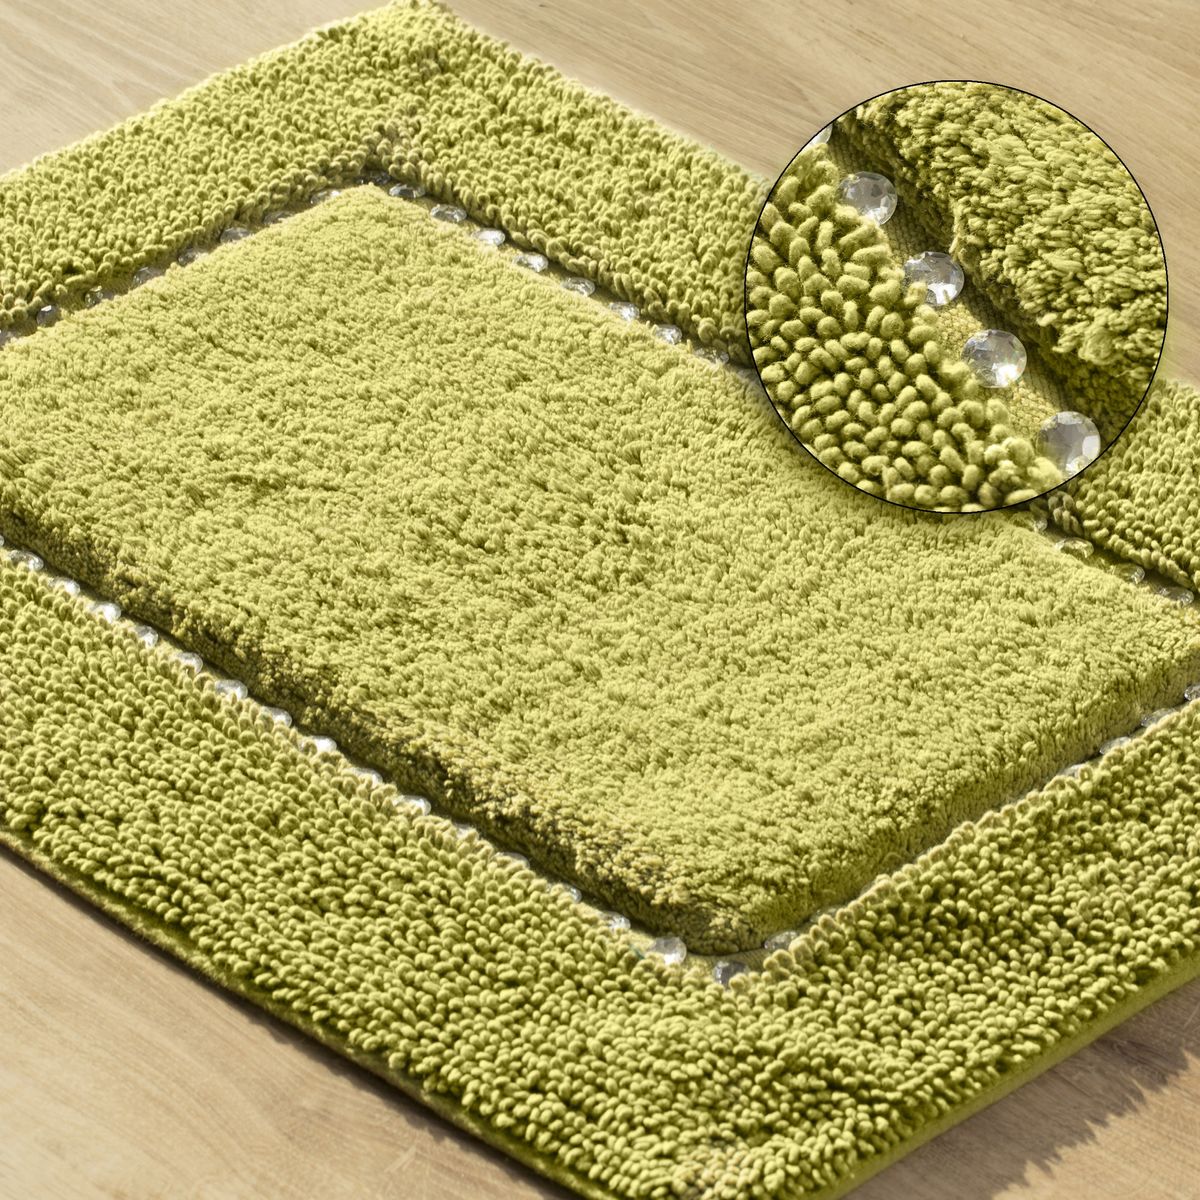 Kusový koberec - kobereček LENA olivová 75x150 cm Mybesthome